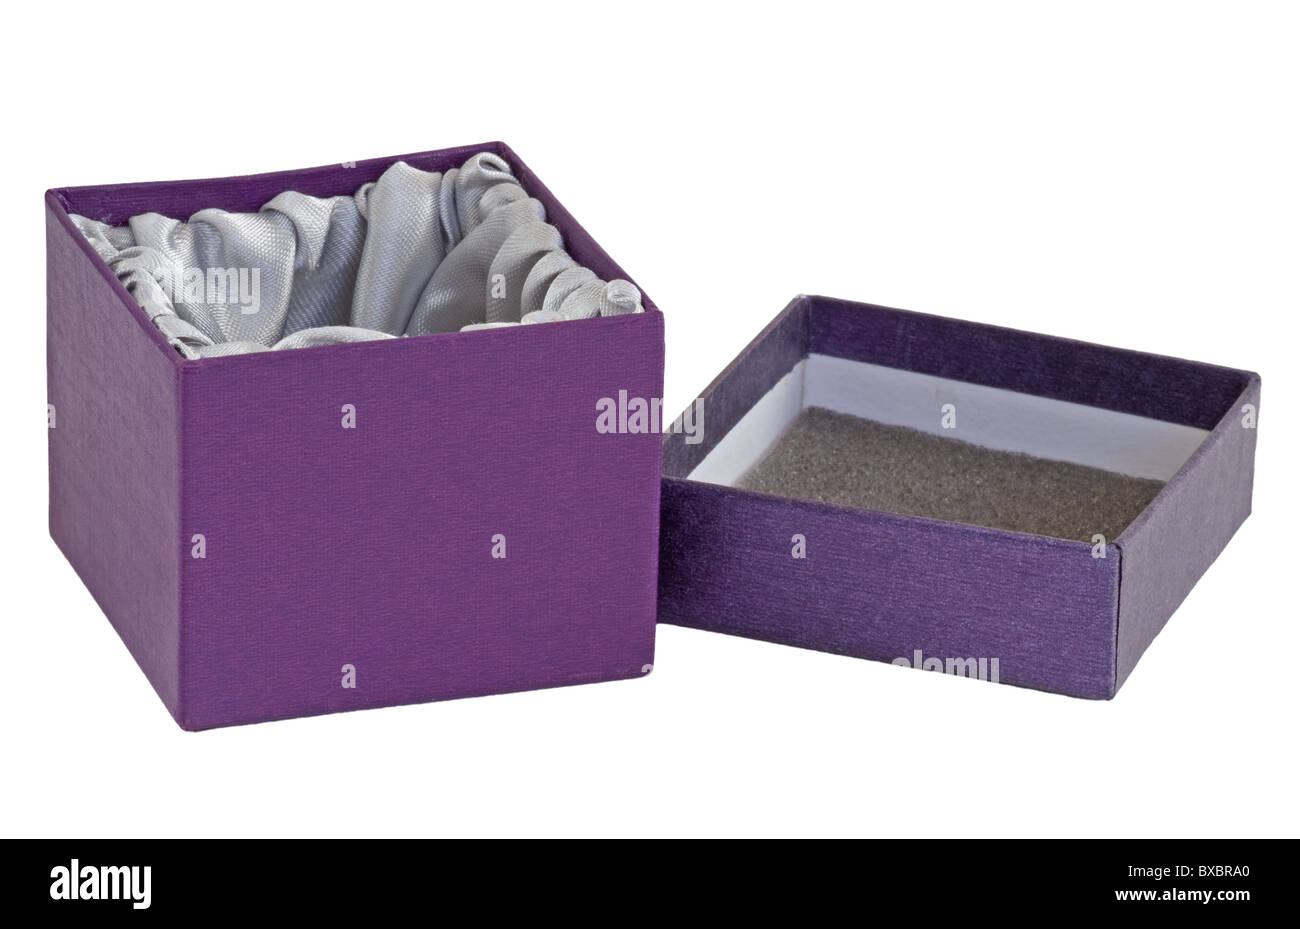 Beautiful Purple Velvet Laminated Hinged Lid Box